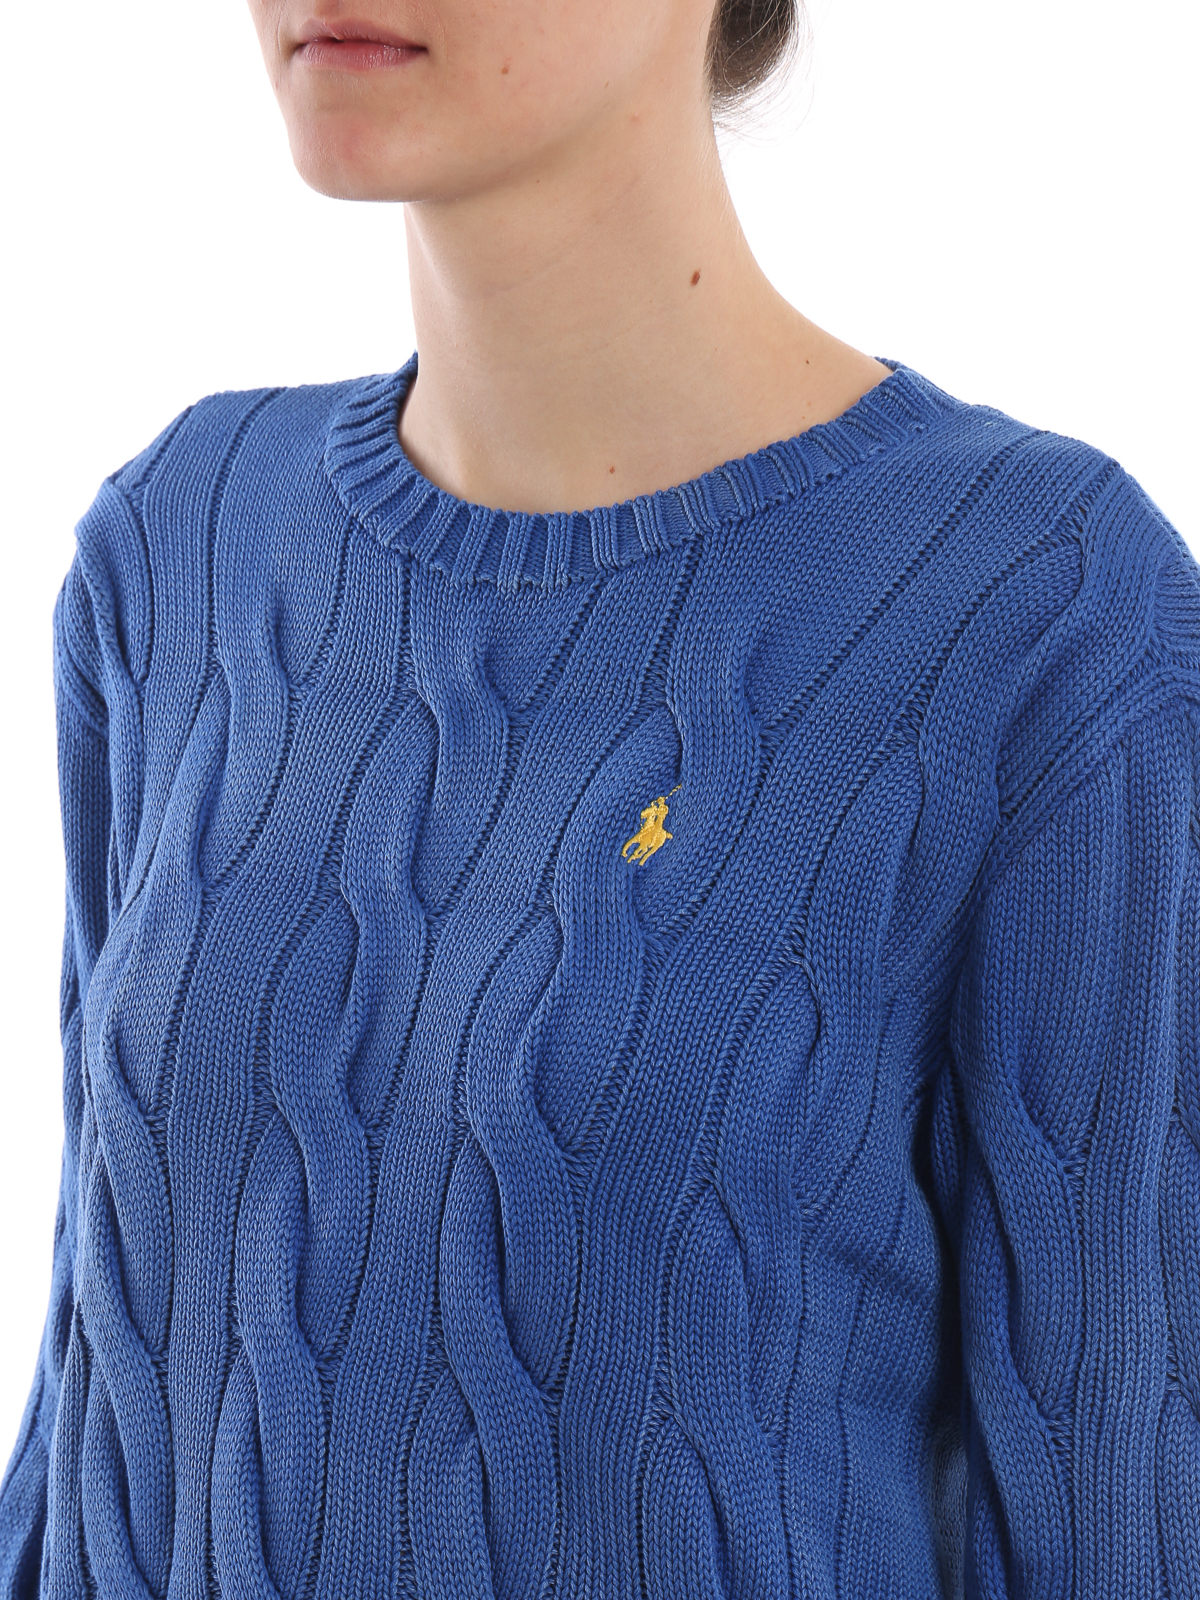 Crew necks Polo Ralph Lauren - Cable knit melange blue cotton 